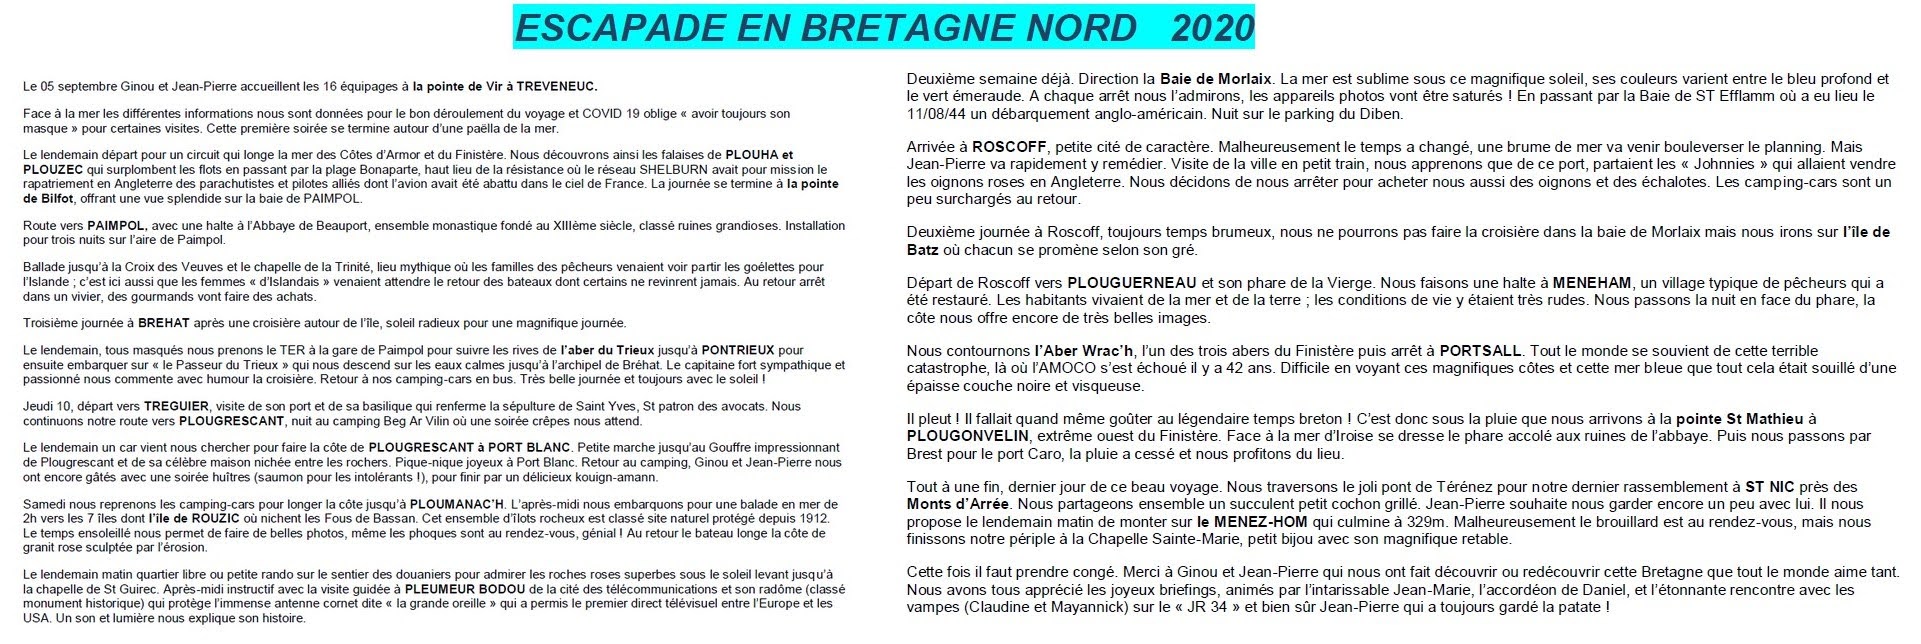 Escapade Bretagne 2020